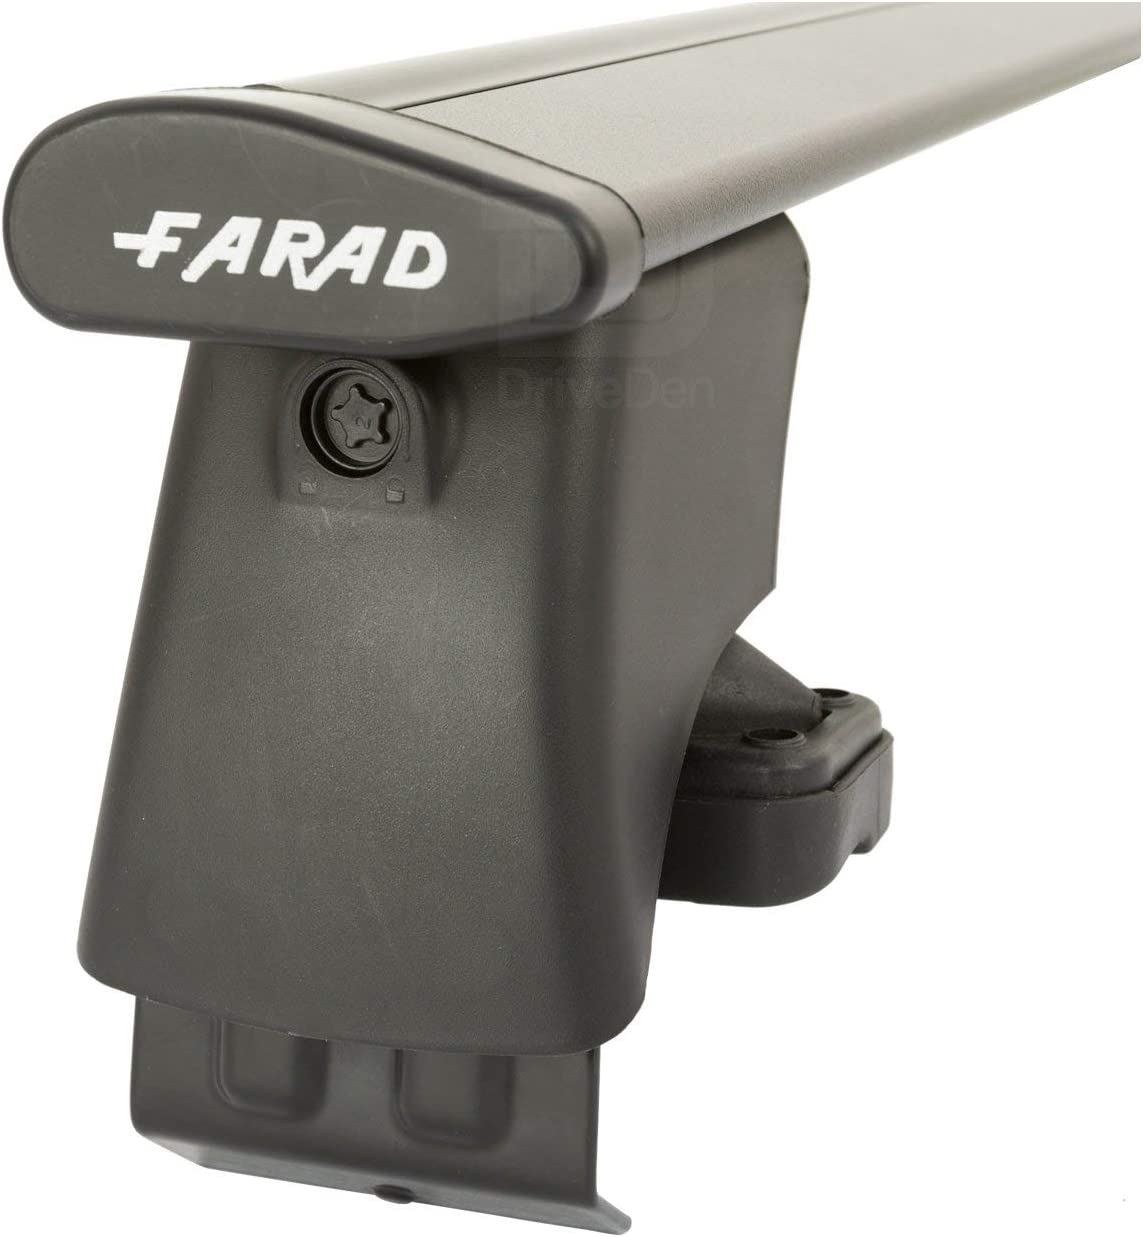 FARAD-Kit H2 per barre portatutto - Kia Rio 2005-2010 (senza corrimano)